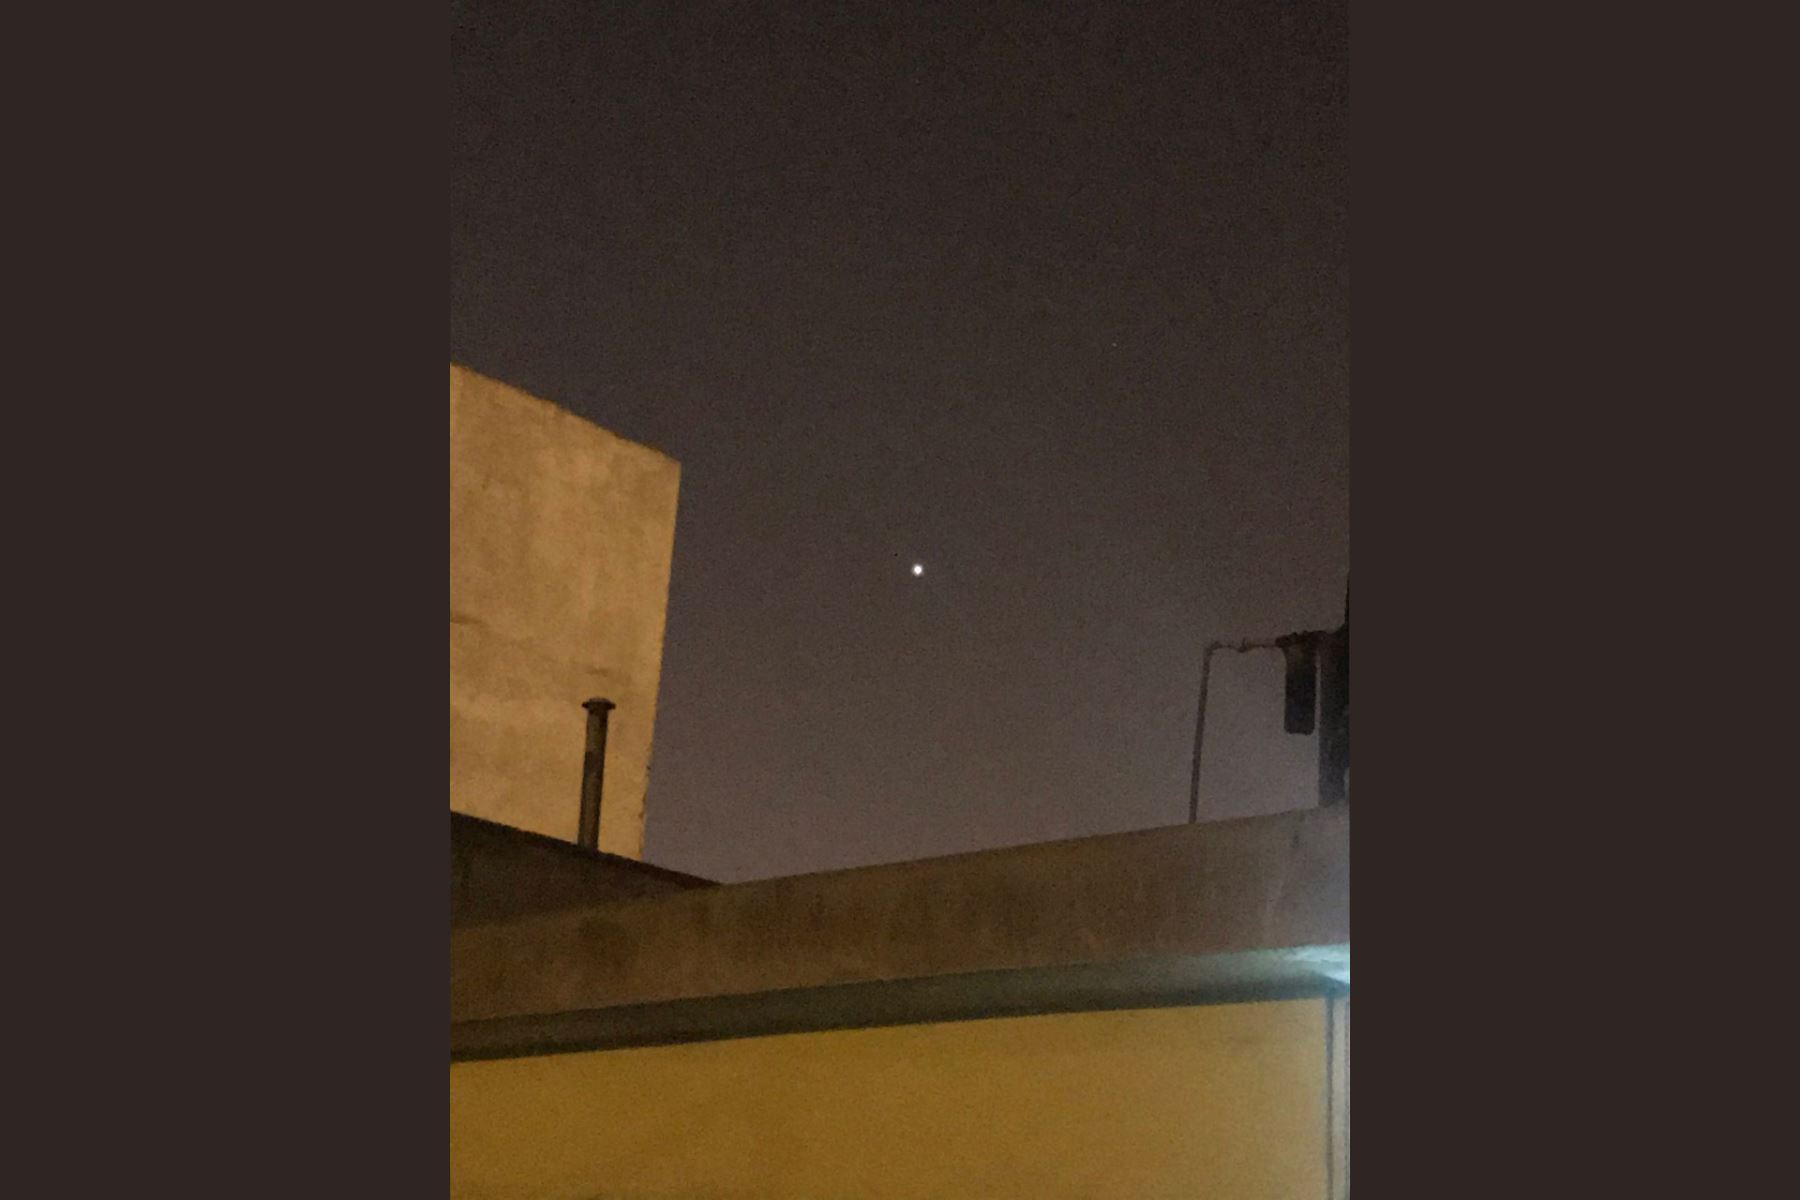 Durante estos días se podrán observar planetas como Venus, Saturno o Marte; además de estrellas fugaces por nuestro cielo, dijo la Agencia Espacial del Perú. Foto: Twitter @Ronny_Isla